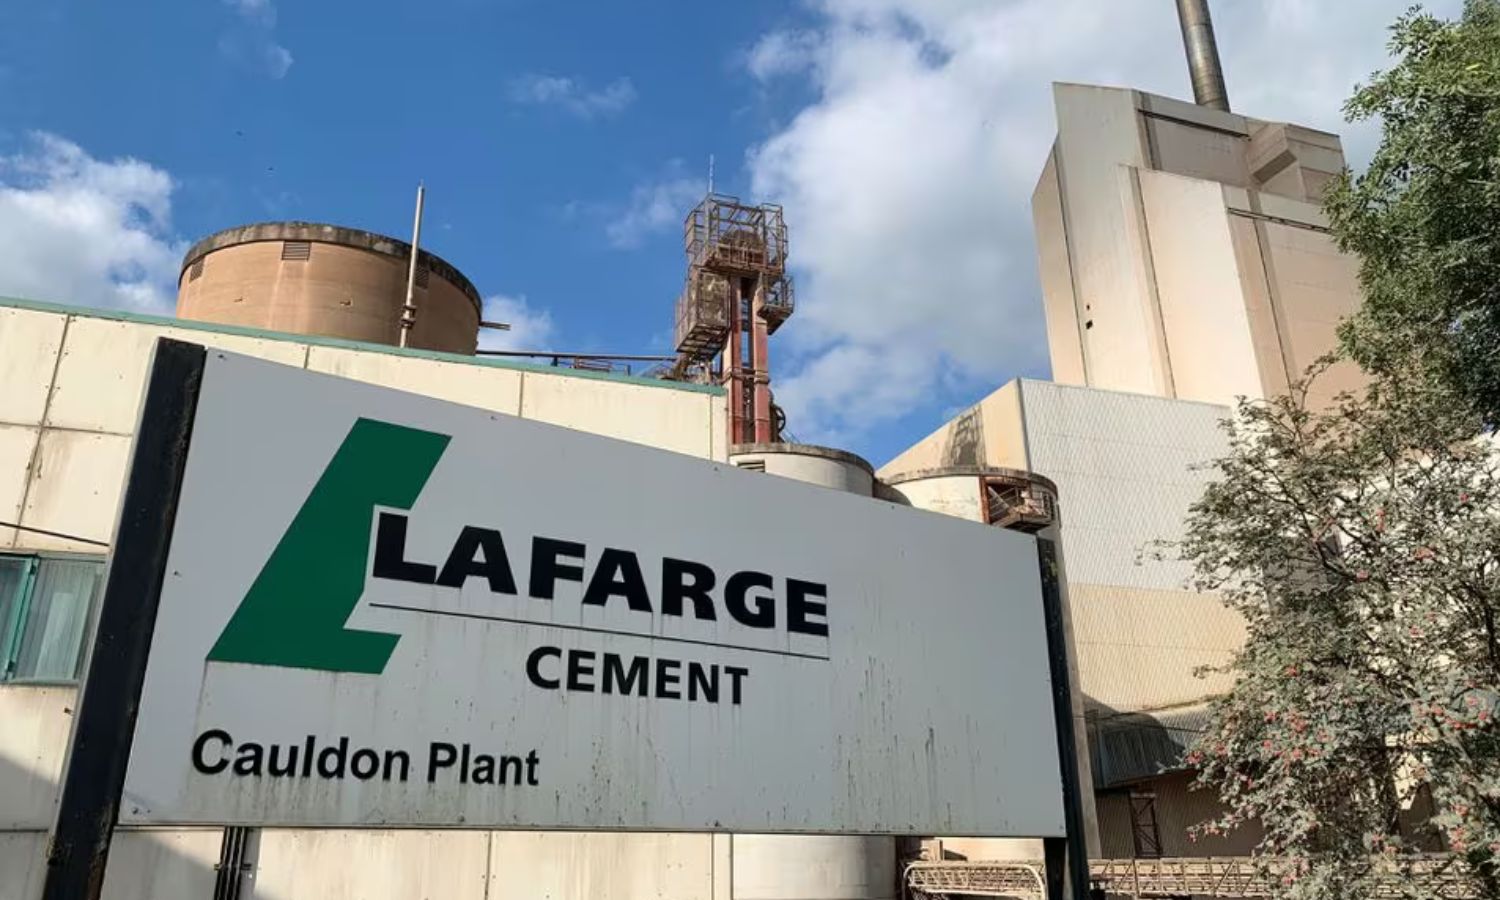 منظر خارجي لمصنع أسمنت لافارج المملوك لشركة لافارج هولسيم في بريطانيا- 17 أيلول 2021 (رويترز)